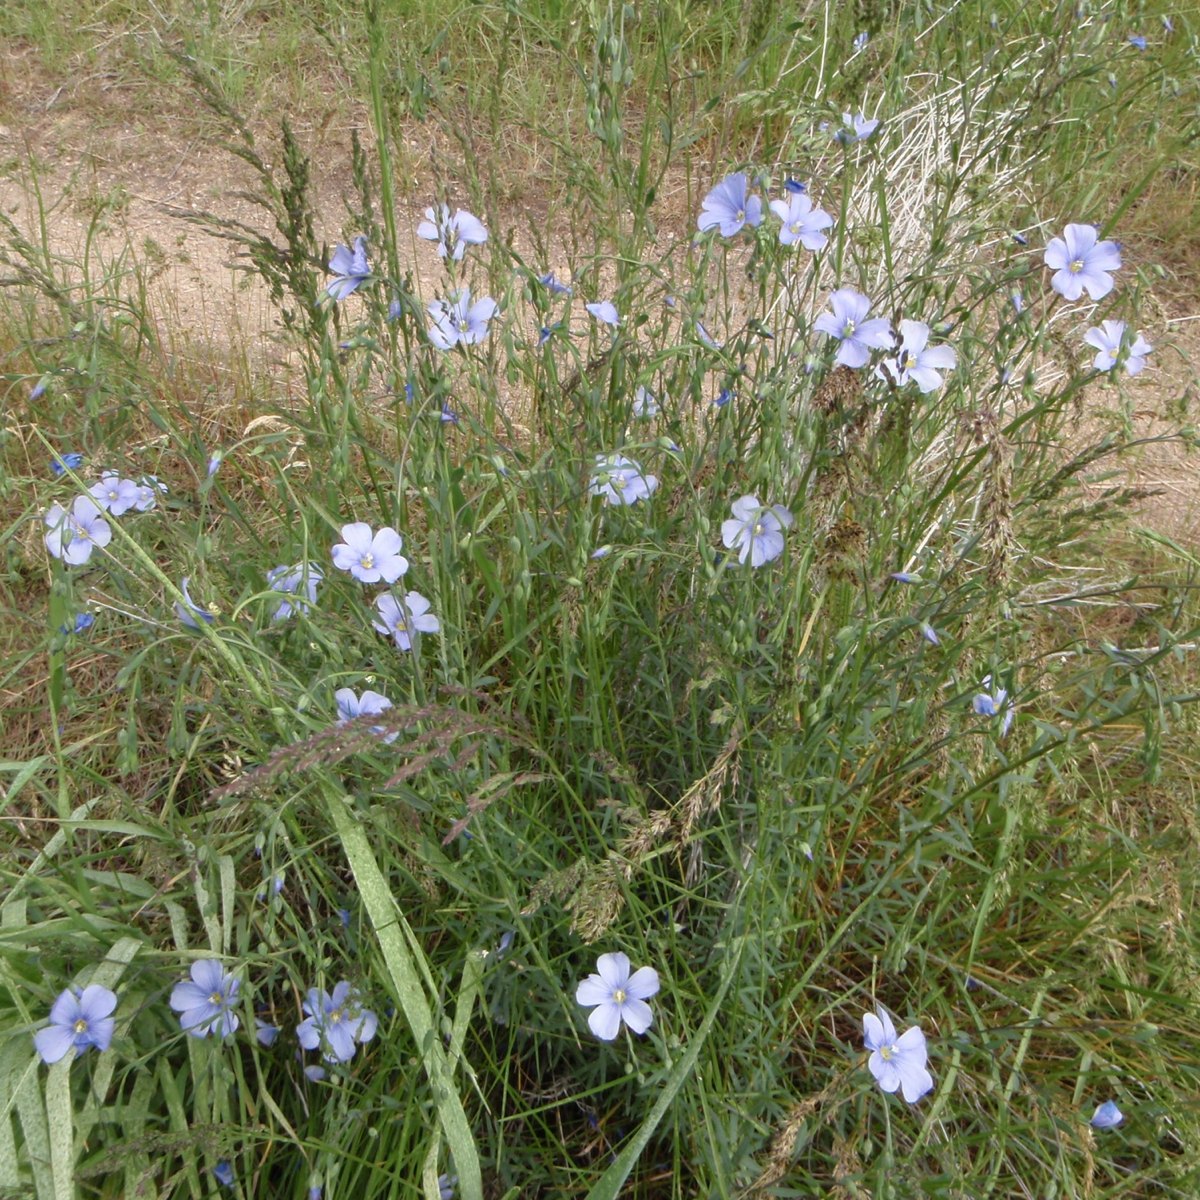 Purple flax